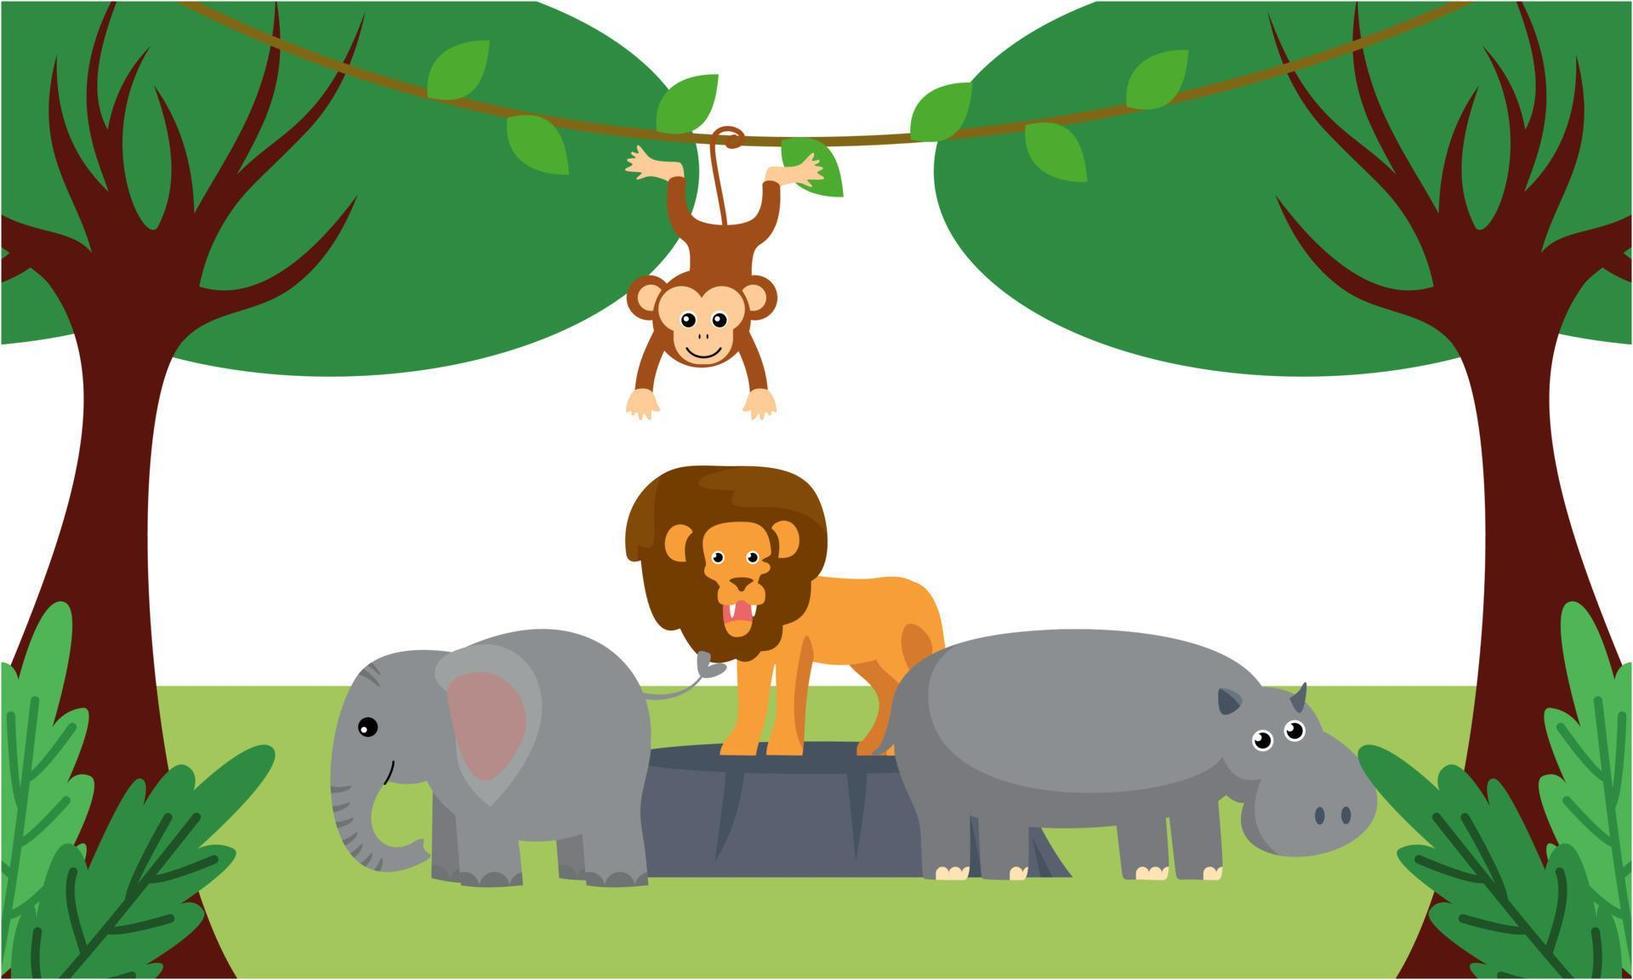 lindos animales de la selva en estilo de dibujos animados, animales salvajes, diseños de zoológicos para ilustración de fondo vector